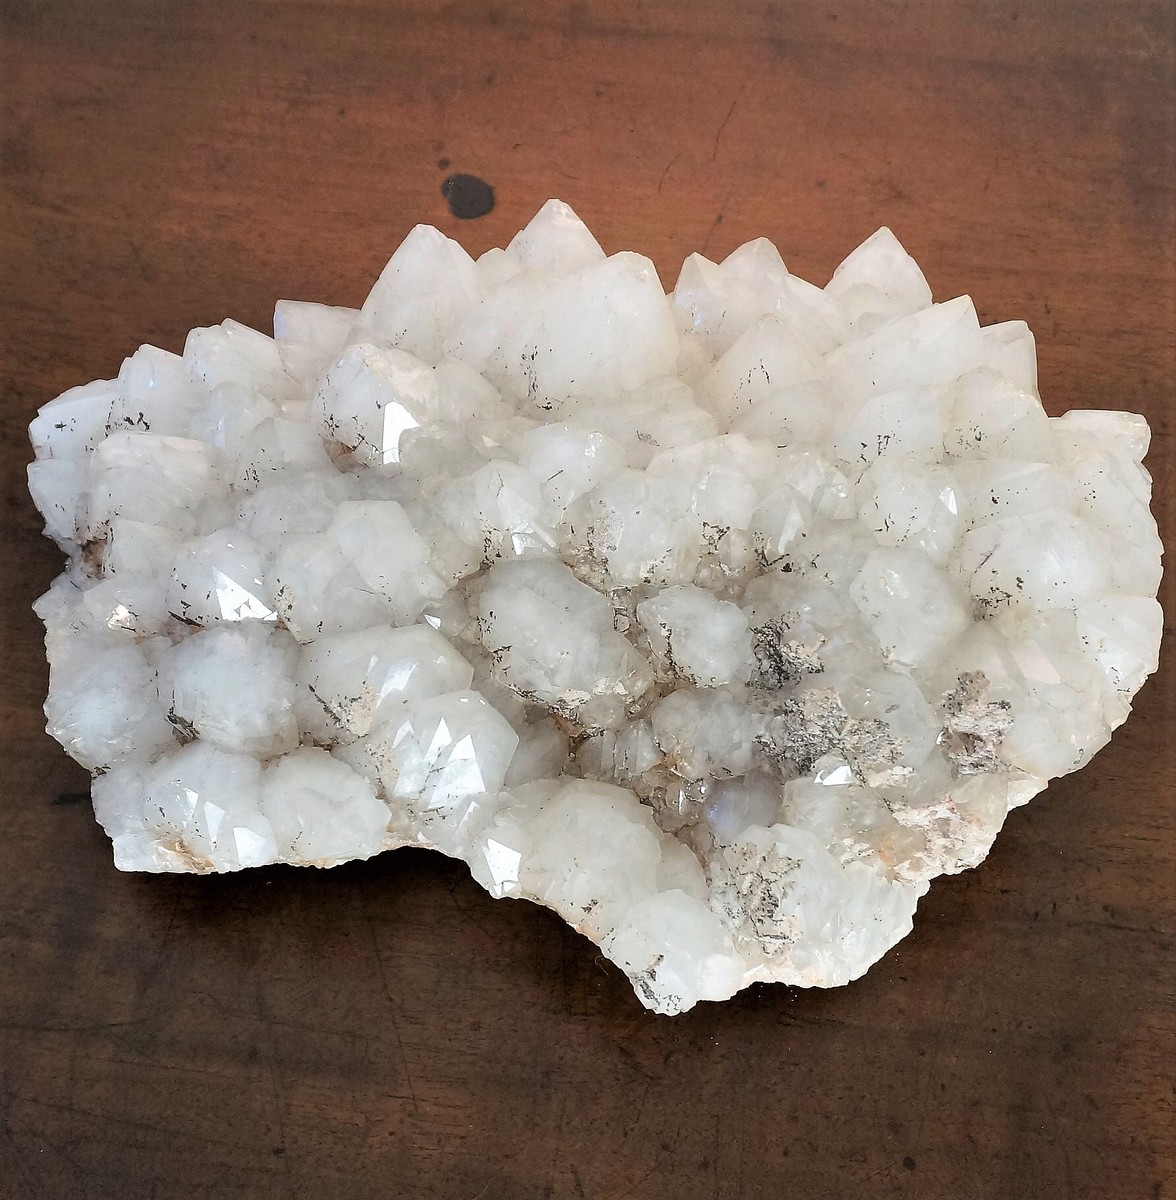 Cristal Rock, 14,5 kg, large piece